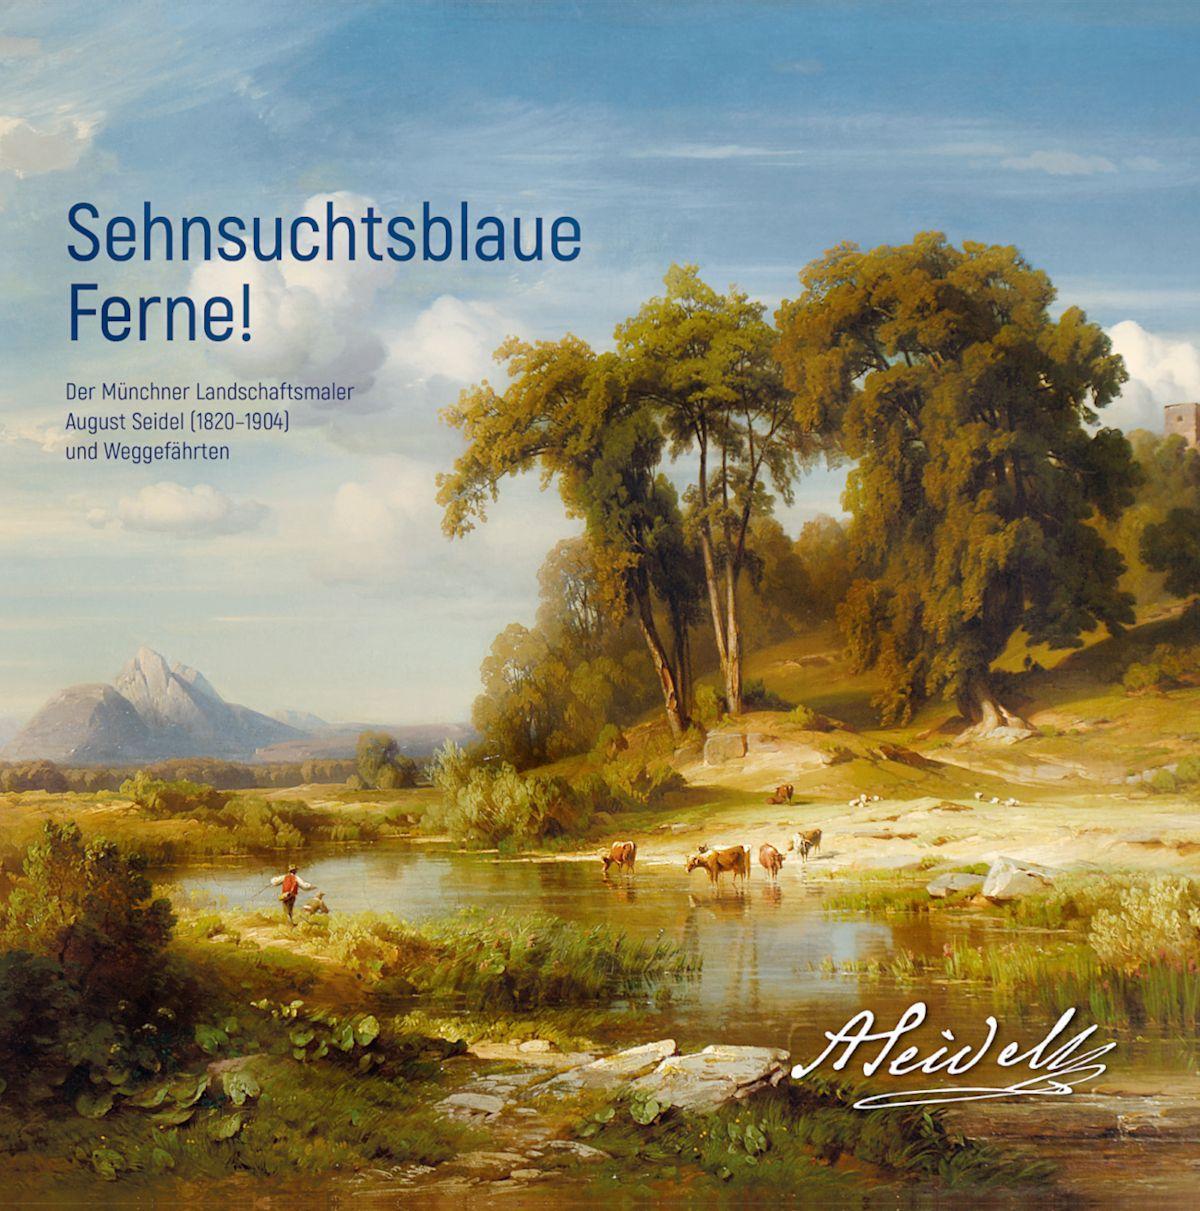 Carte Sehnsuchtsblaue Ferne! Der Münchner Landschaftsmaler August Seidel (1820-1904) und Weggefährten Forschungsstelle August Seidel